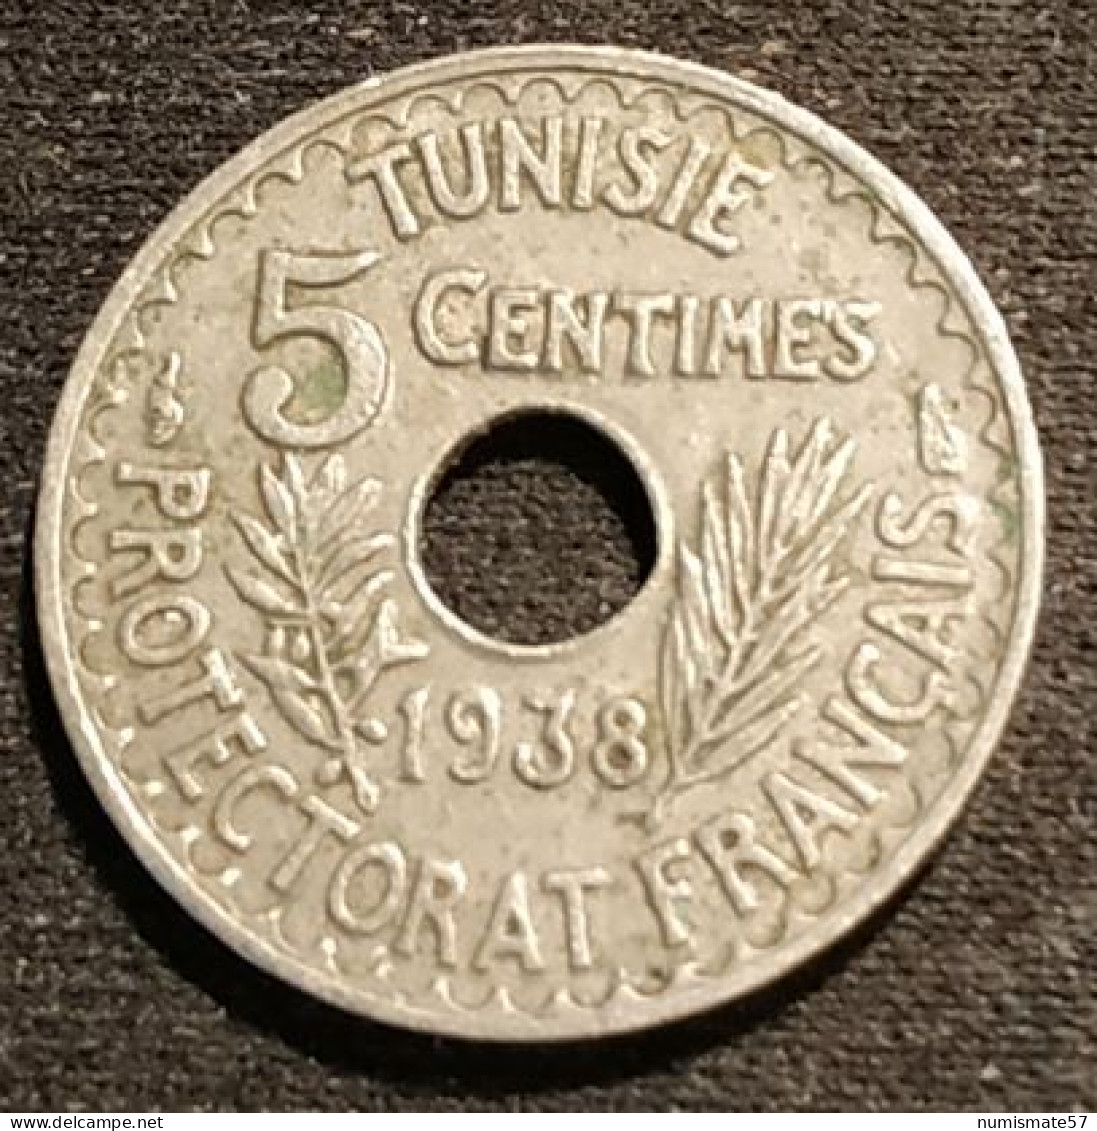 TUNISIE - TUNISIA - 5 CENTIMES 1938 ( 1357 ) - Ahmad Pasha - Protectorat Français - KM 258 - Tunisia